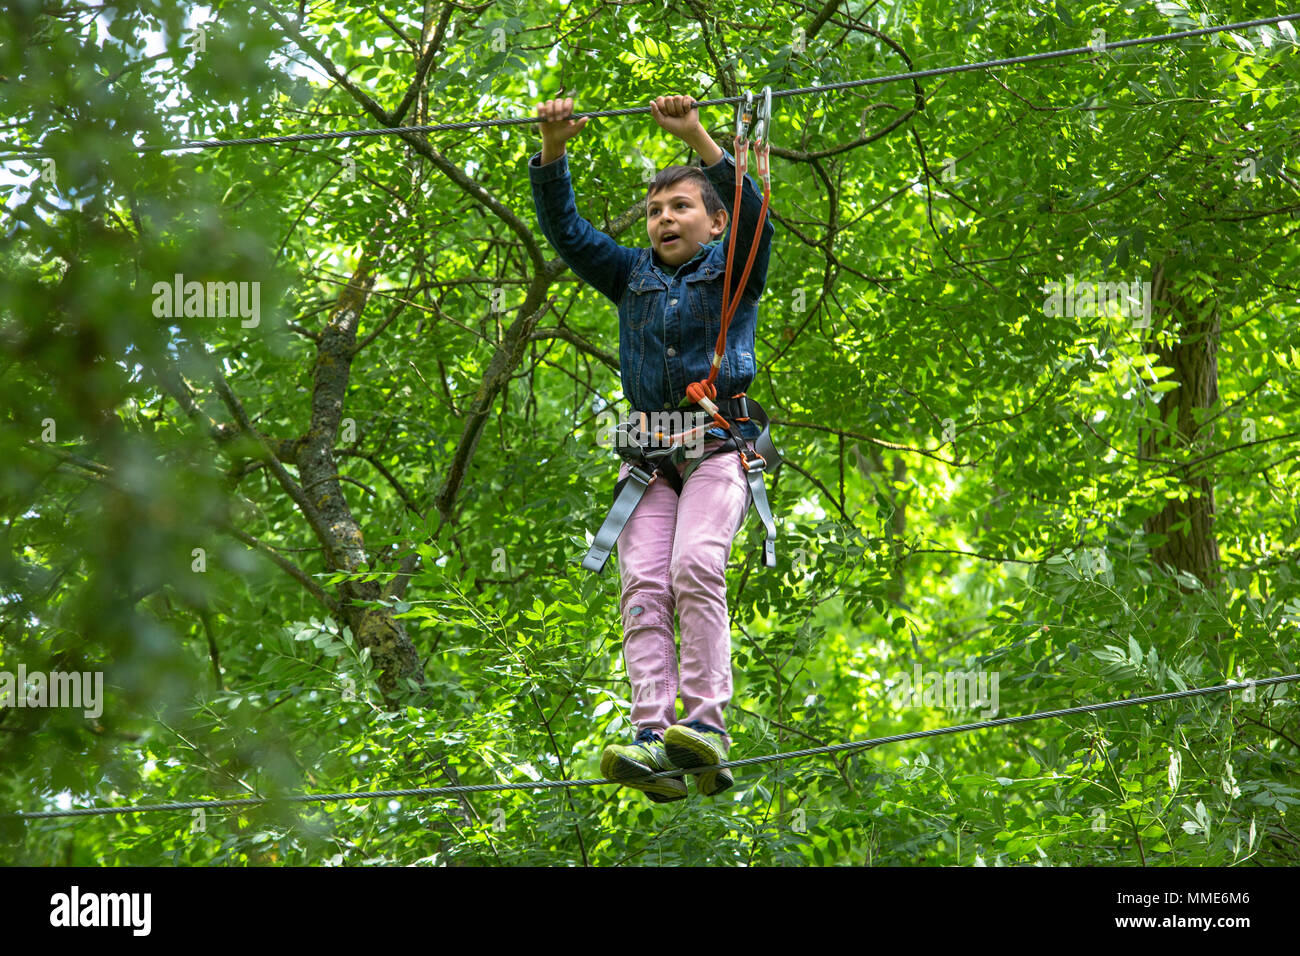 Der 11-jährige Junge auf einem Hochseilgarten. Frankreich. Stockfoto